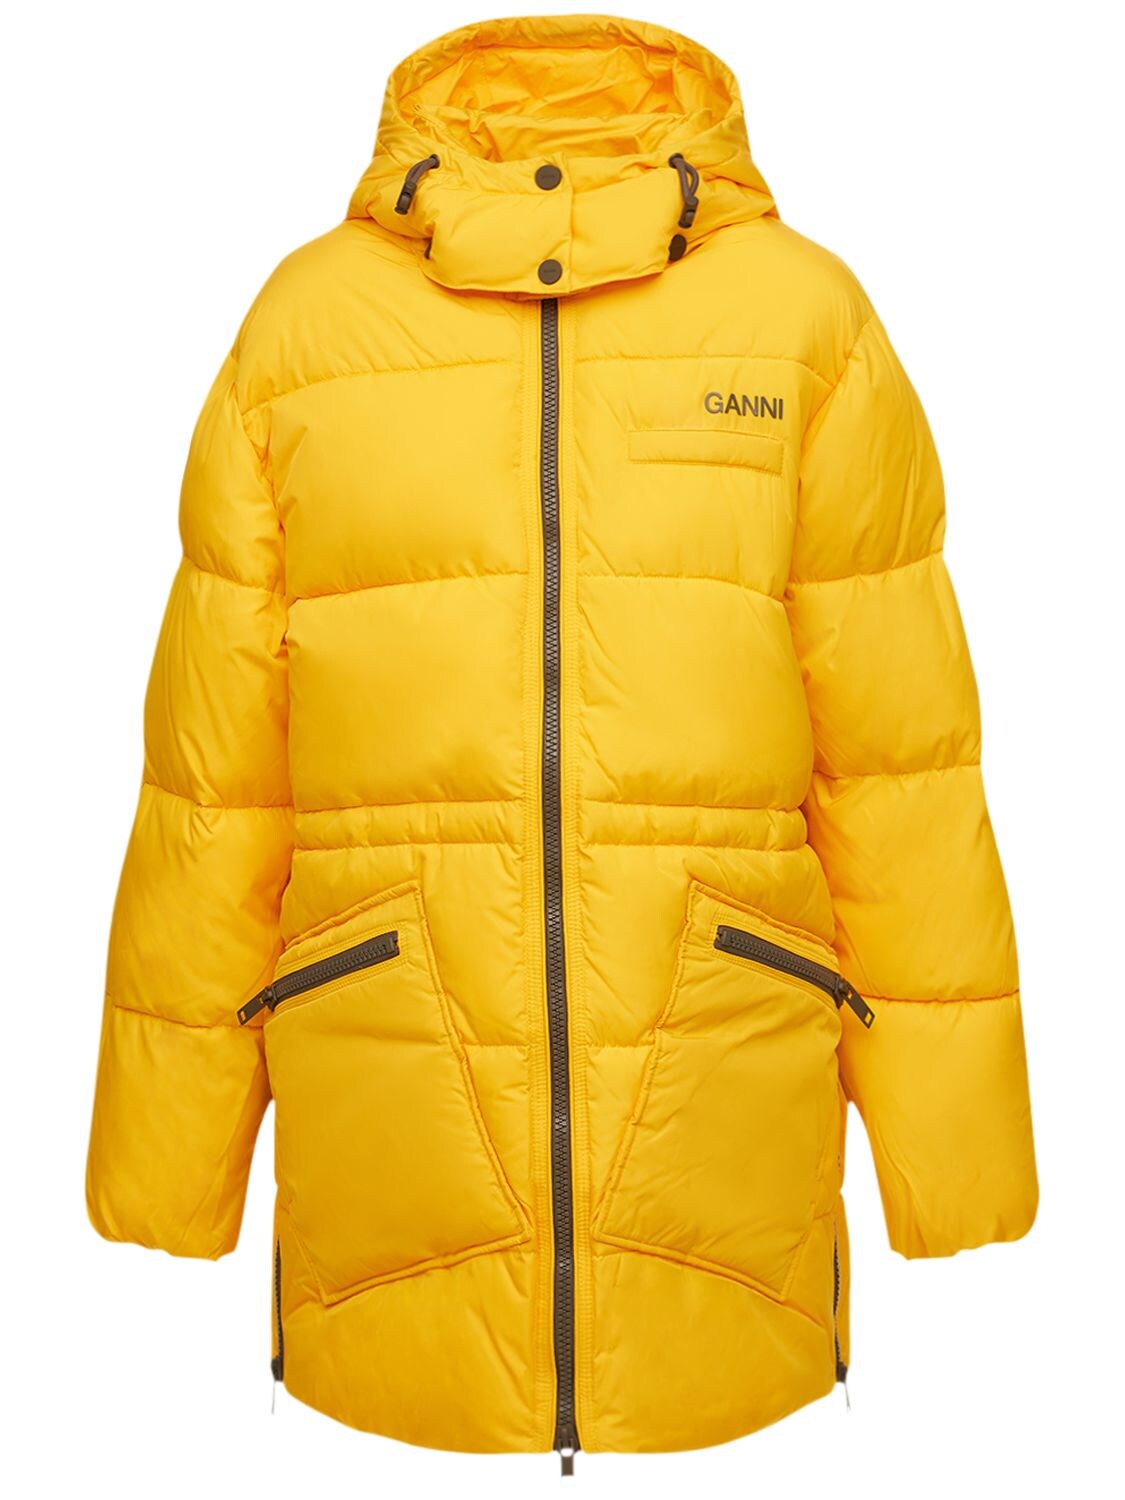 GANNI - Oversized recycled tech puffer jacket - Yellow | Luisaviaroma